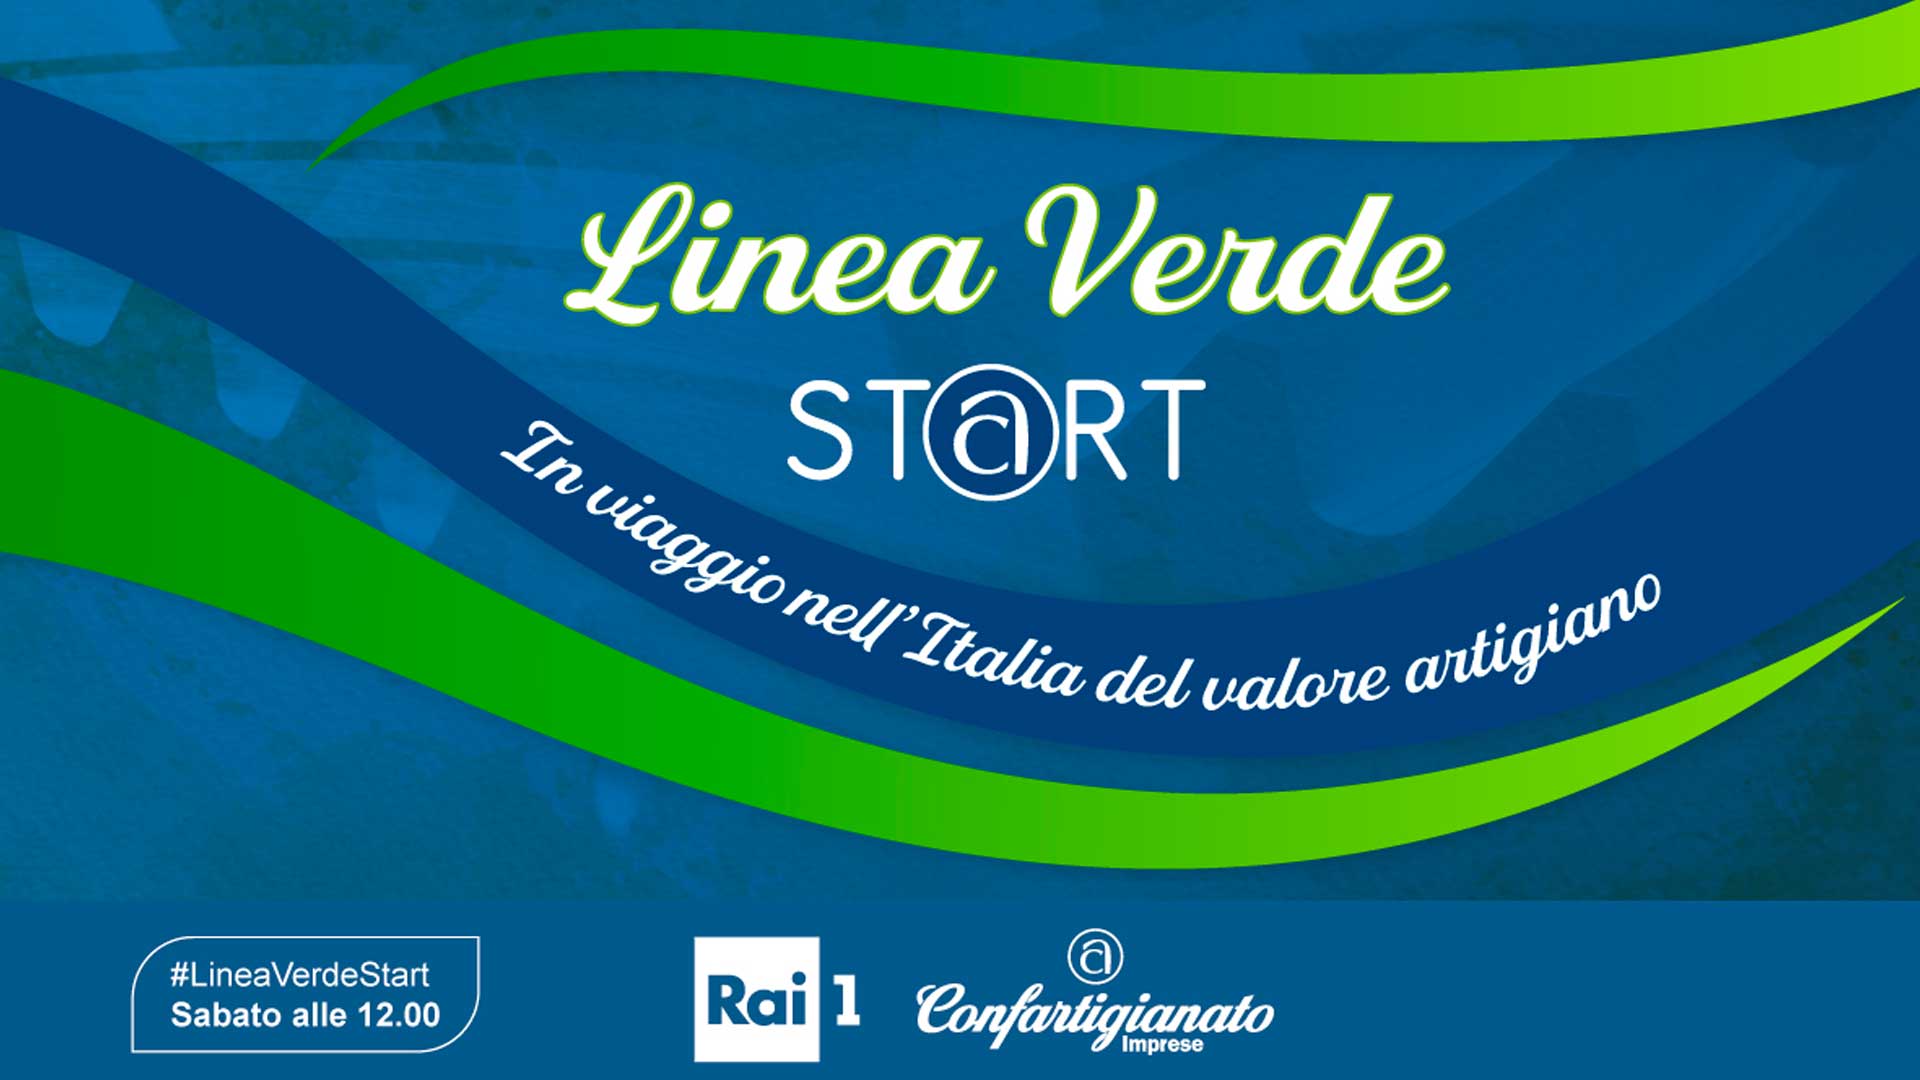 MEDIA – ‘Linea Verde Start’: Rai 1 e Confartigianato in viaggio nell’Italia del valore artigiano. Si parte il 9 ottobre, alle 12 su Rai 1